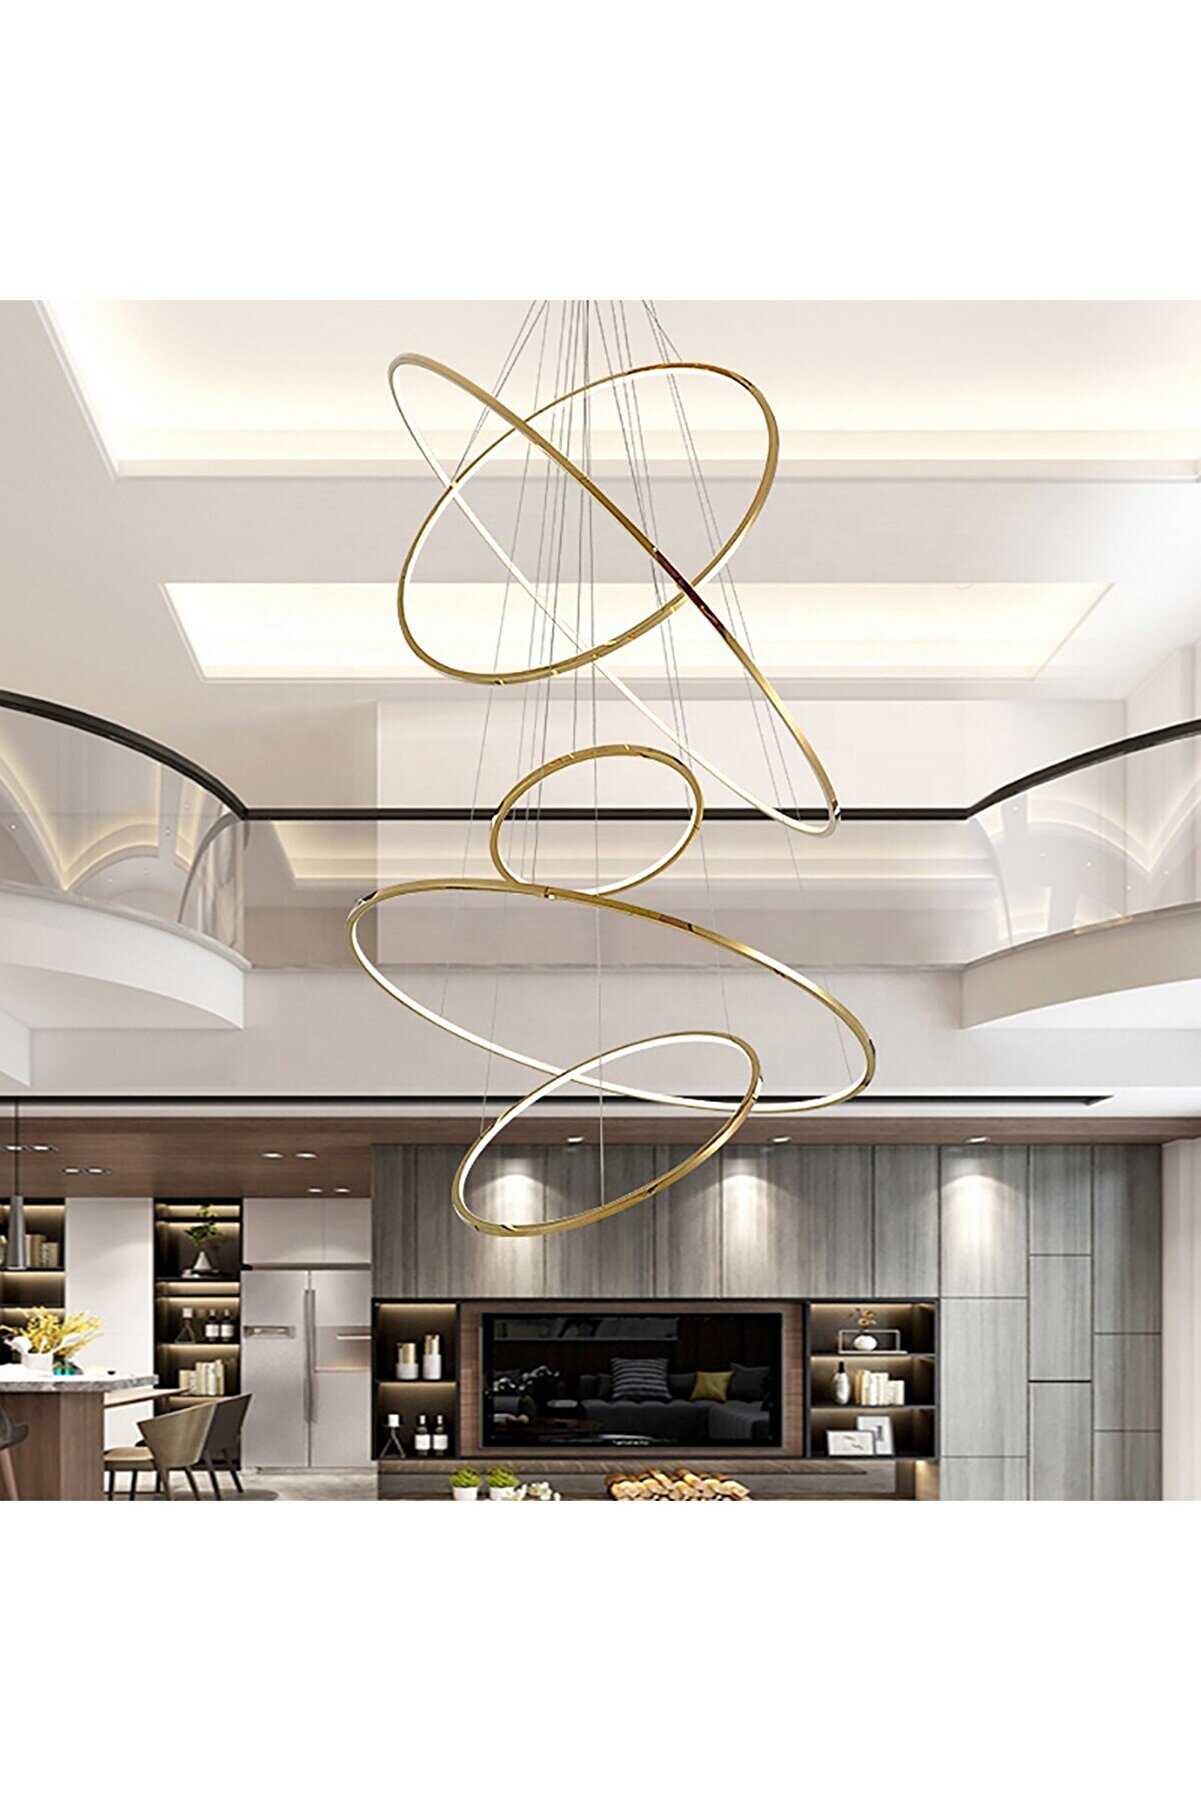 voxlamp lighting solutions Penthouse Samsung Ledli Yüksek Tavanlar Için Çember Özel Sarkıt Led Avize